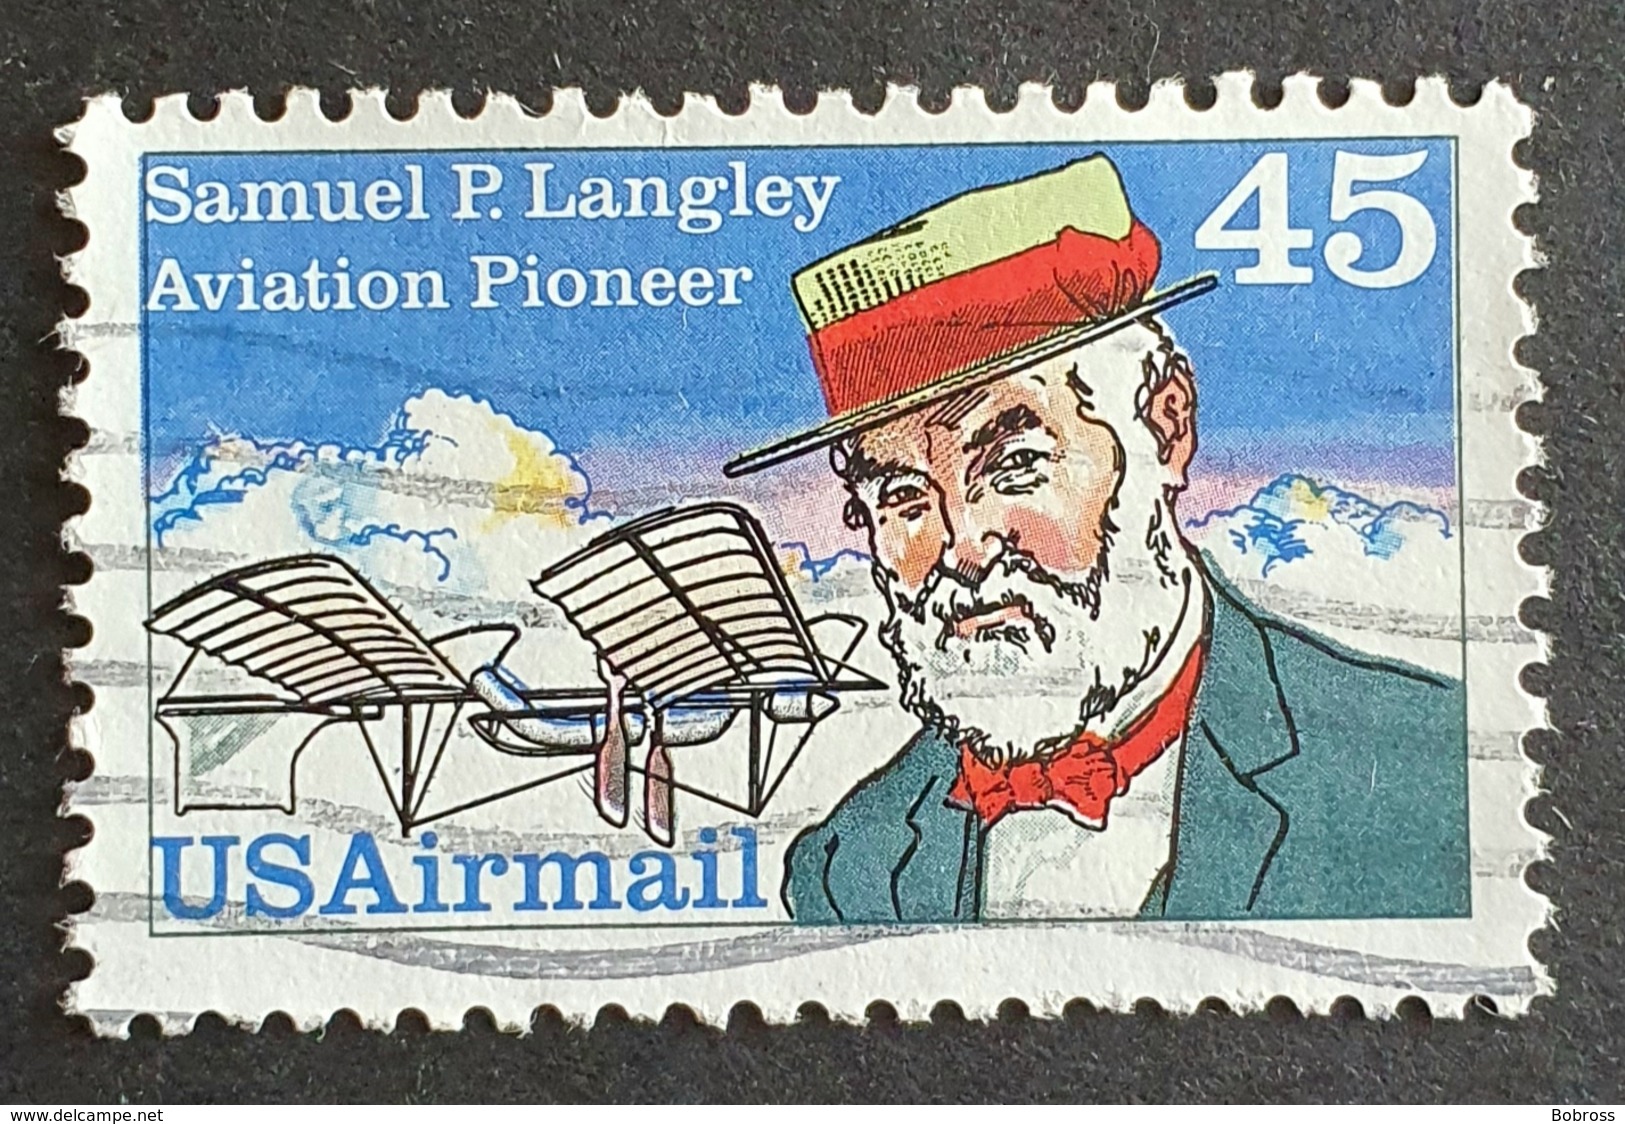 Airmail, #C118, Samuel P. Langley, United States Of America, USA, Used - 2b. 1941-1960 Ongebruikt